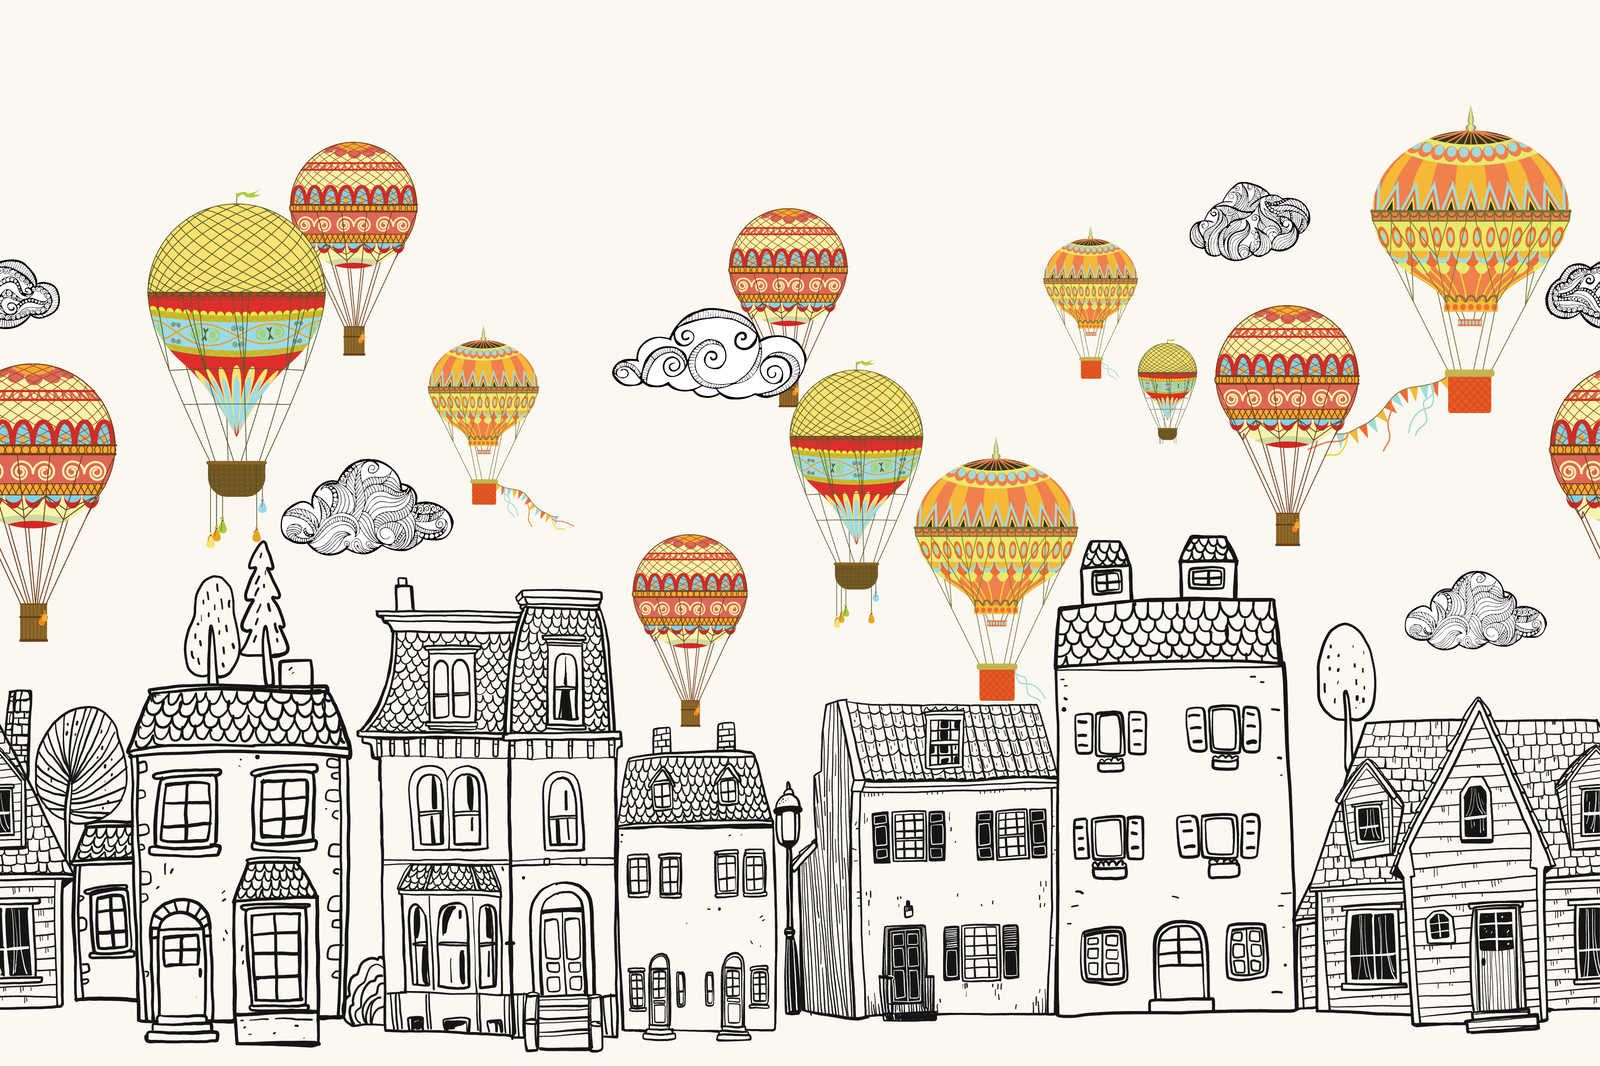             Leinwand Kleinstadt mit Heißluftballoons – 120 cm x 80 cm
        